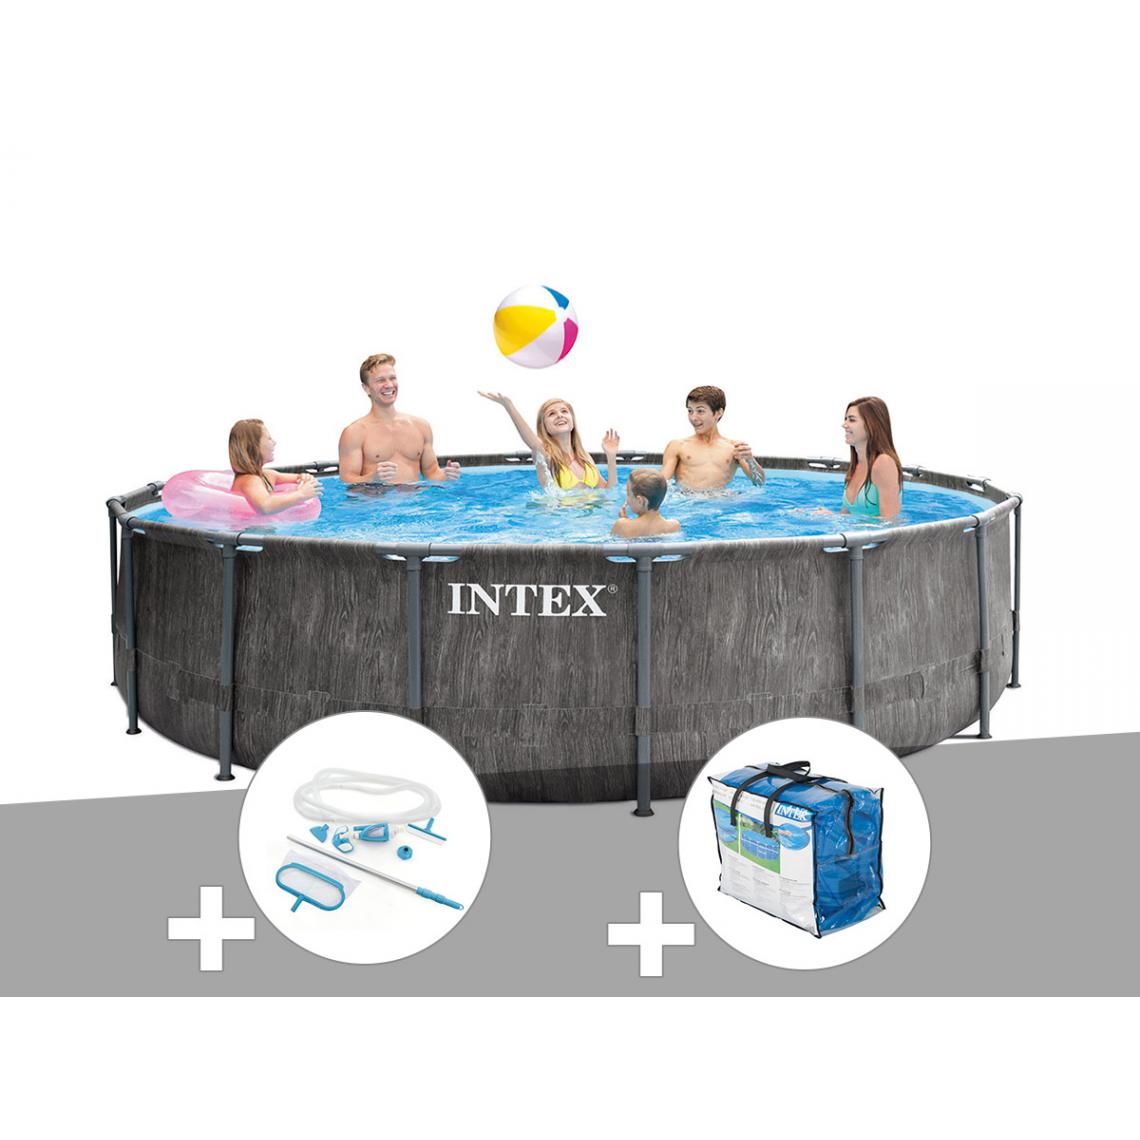 Intex - Kit piscine tubulaire Intex Baltik ronde 5,49 x 1,22 m + Kit d'entretien + Bâche à bulles - Piscine Tubulaire